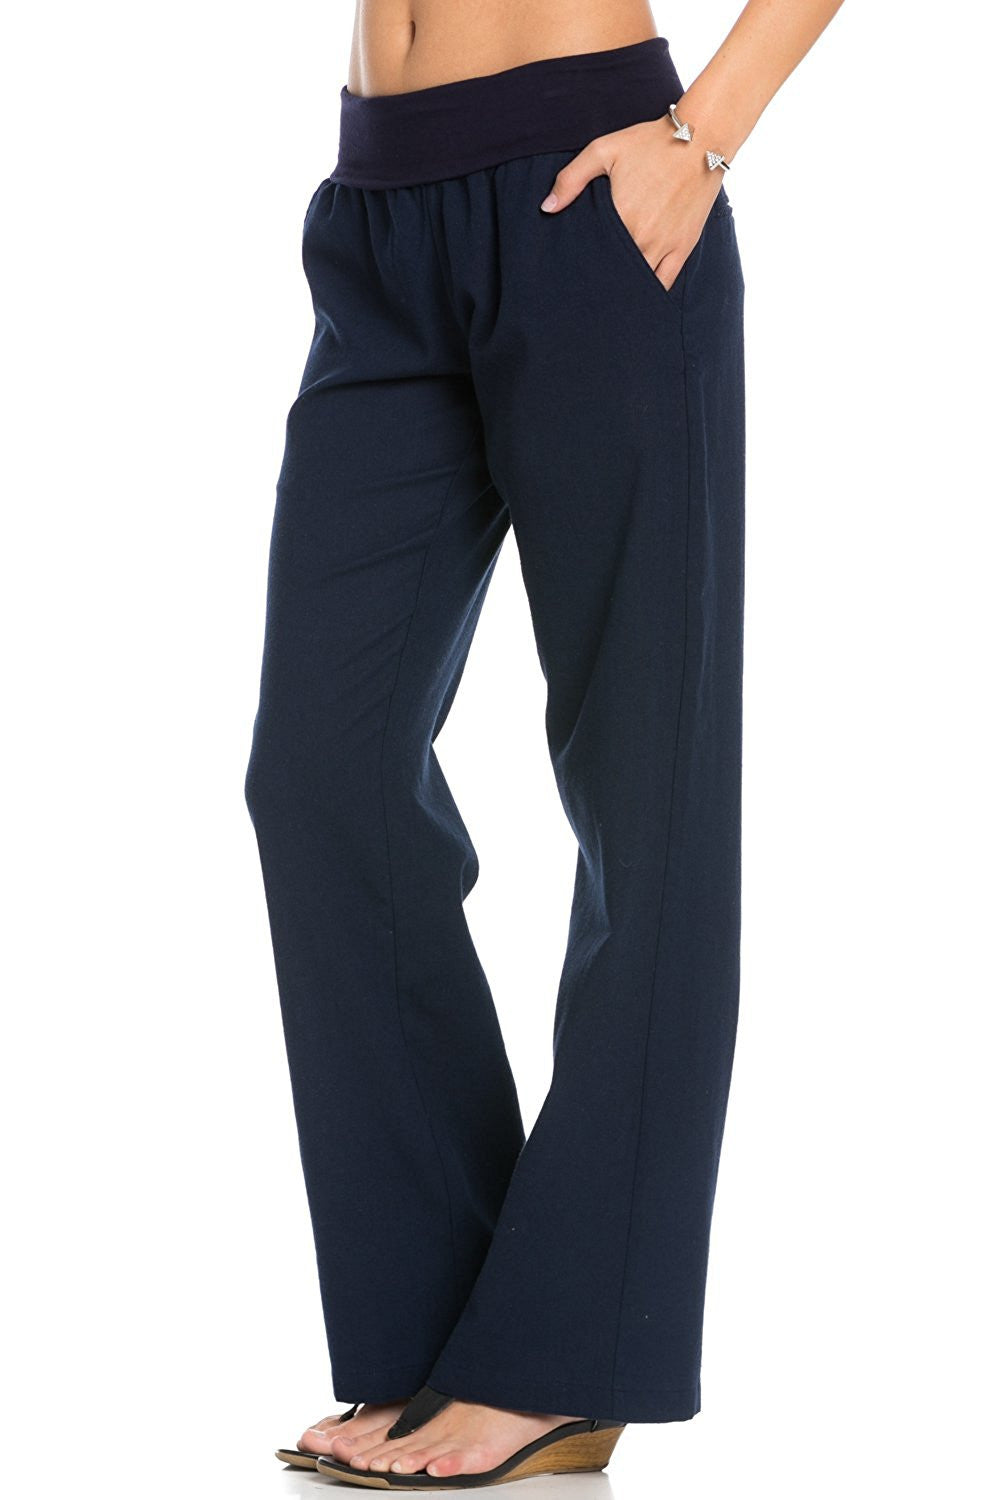 Poplooks Women's Comfy Fold Over Linen Pants (Navy)